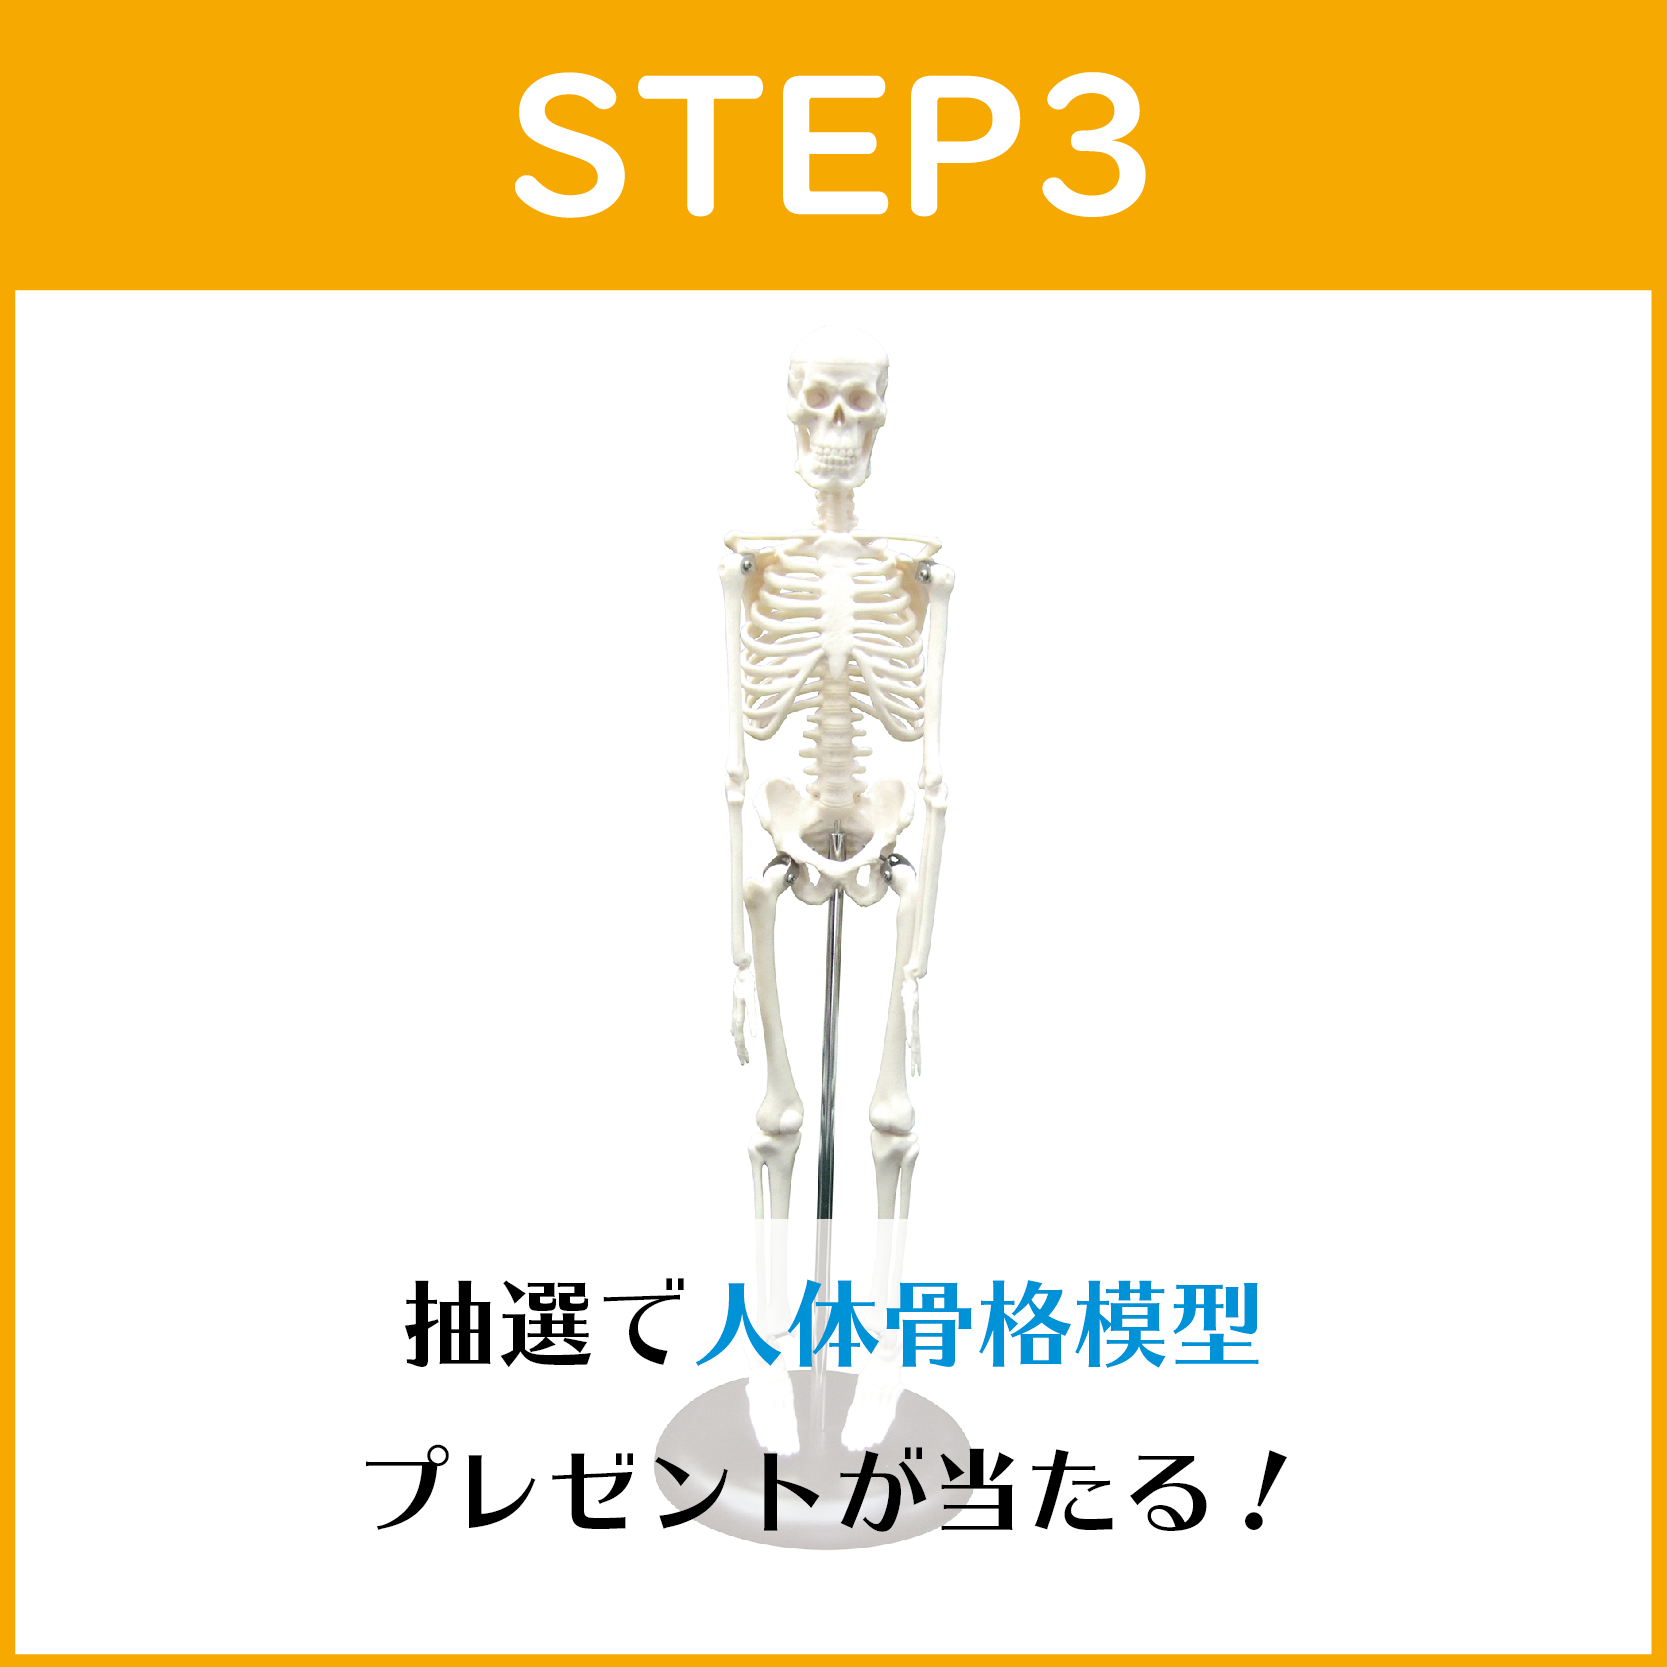 STEP3:2名様に人体骨格模型が当たる！